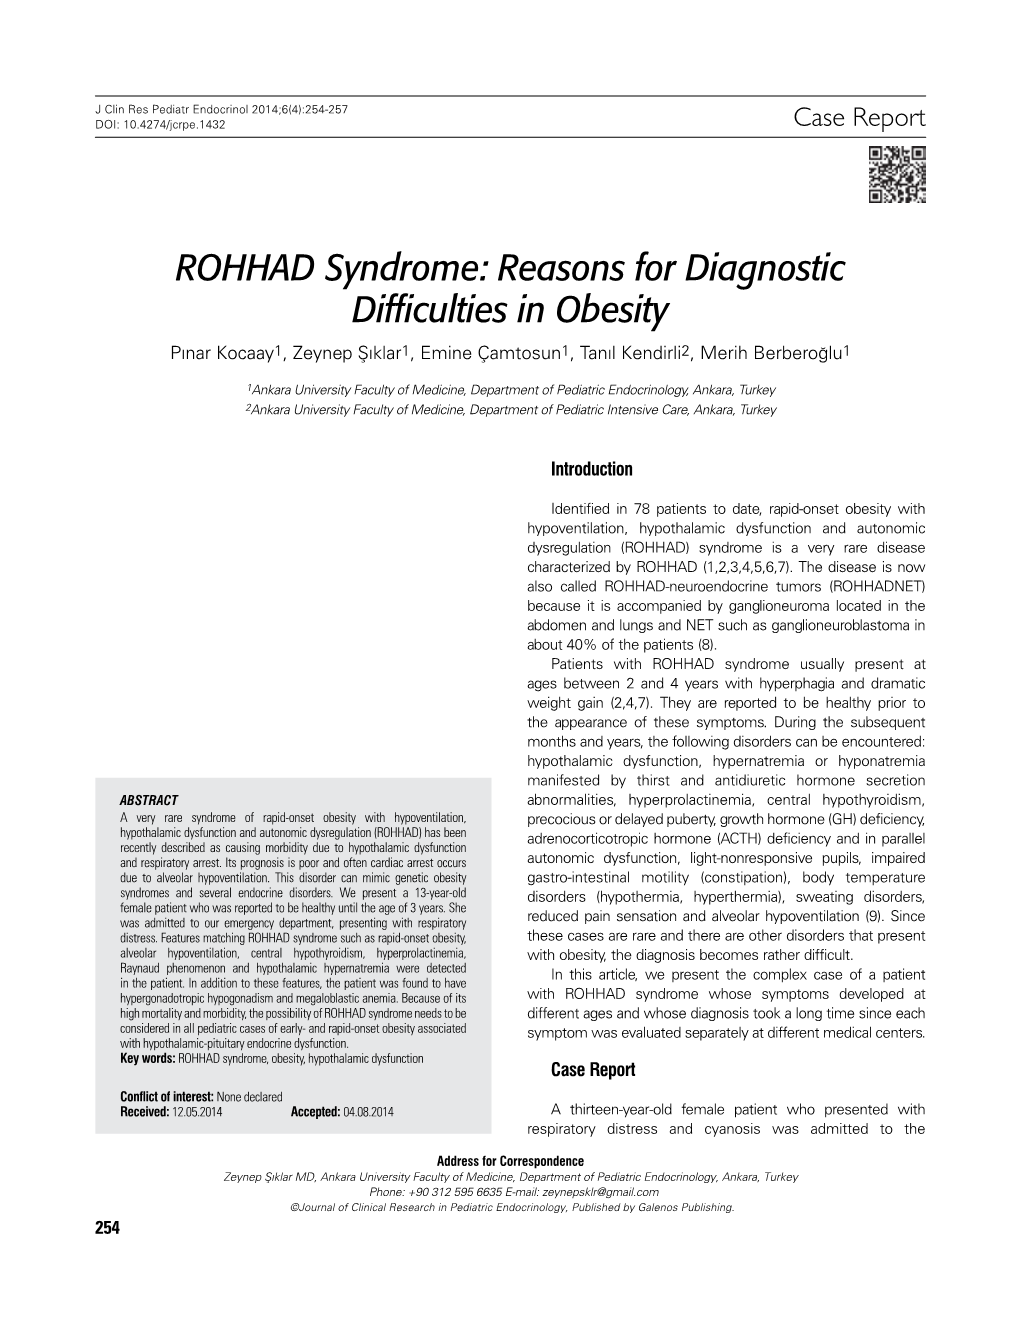 ROHHAD Syndrome: Reasons for Diagnostic Difficulties in Obesity Pınar Kocaay1, Zeynep Şıklar1, Emine Çamtosun1, Tanıl Kendirli2, Merih Berberoğlu1